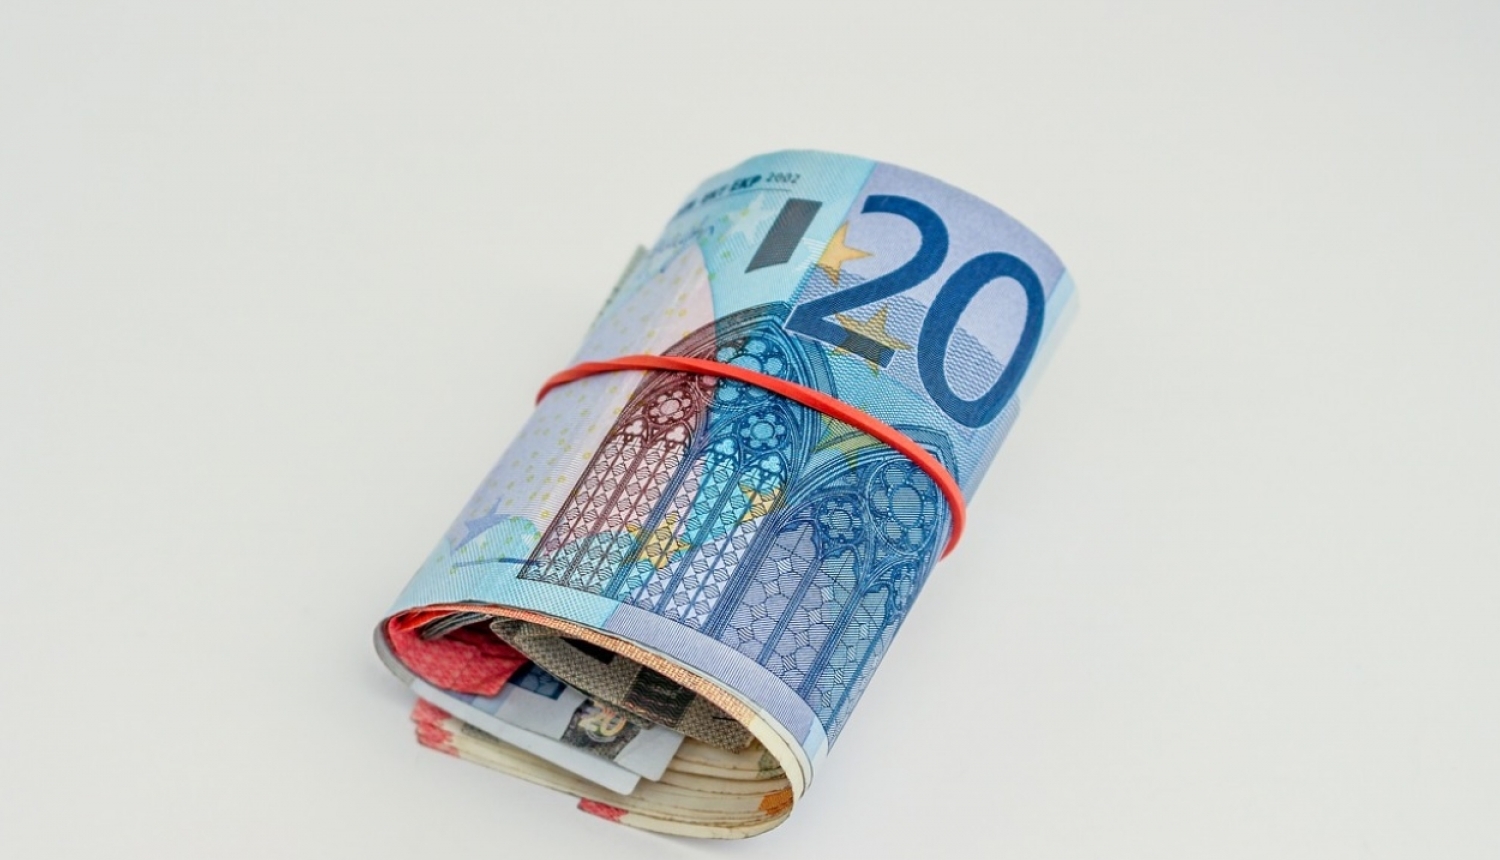 FOTO: 20 eiro banknote